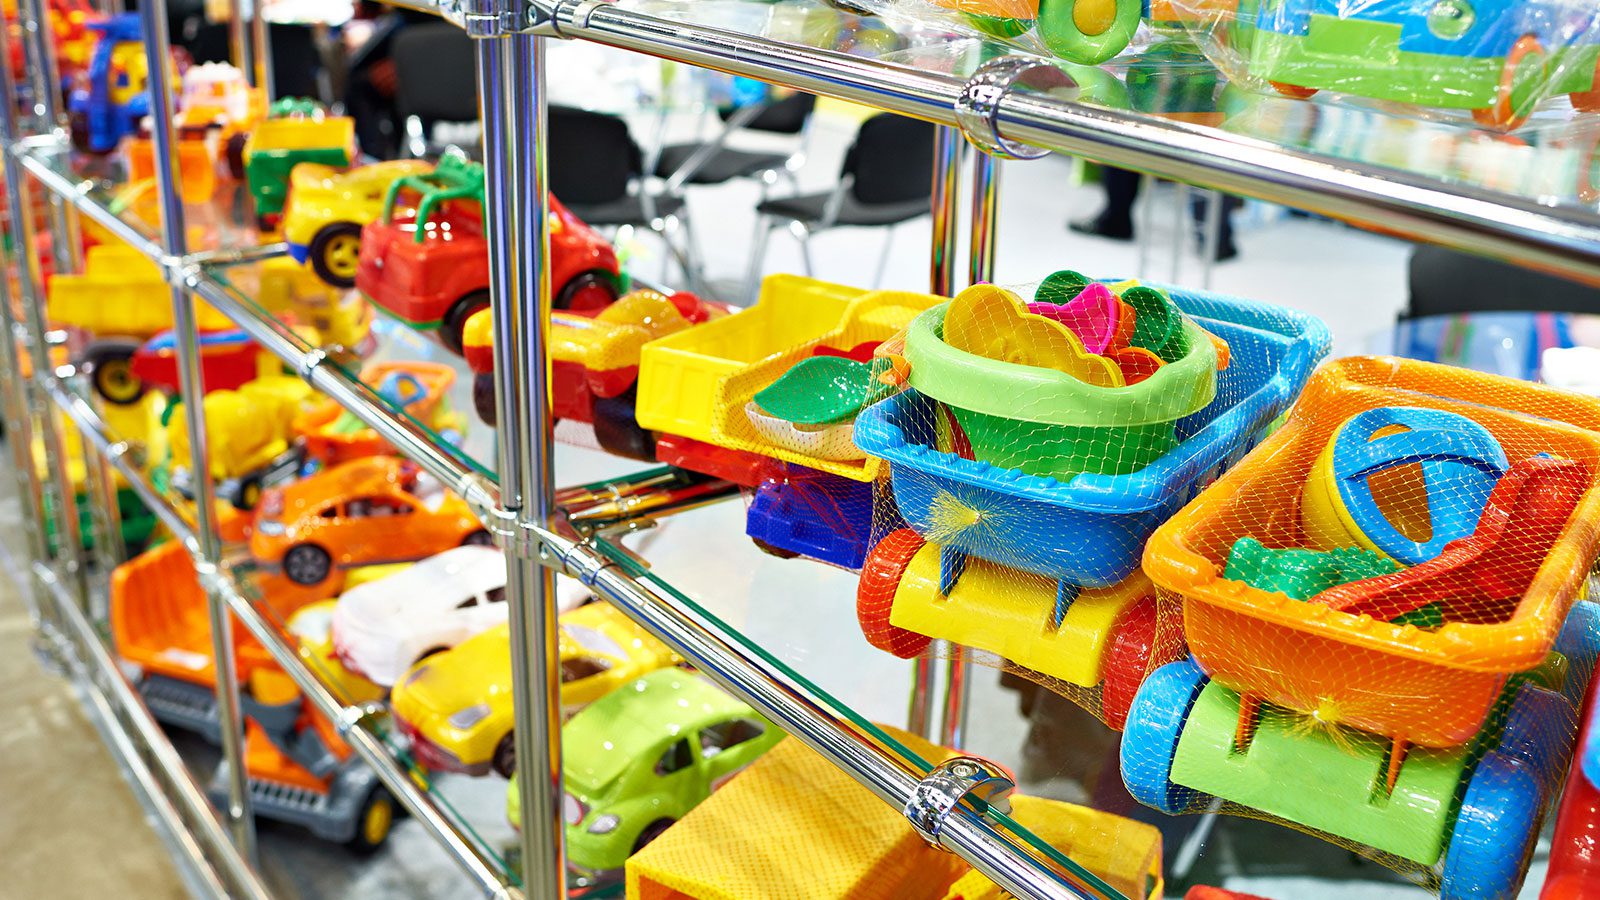 alerta juguetes falsificados aparecen en el mercado y pueden ser peligrosos para los ninos laverdaddemonagas.com donacion juguetes 2 1600x900 1